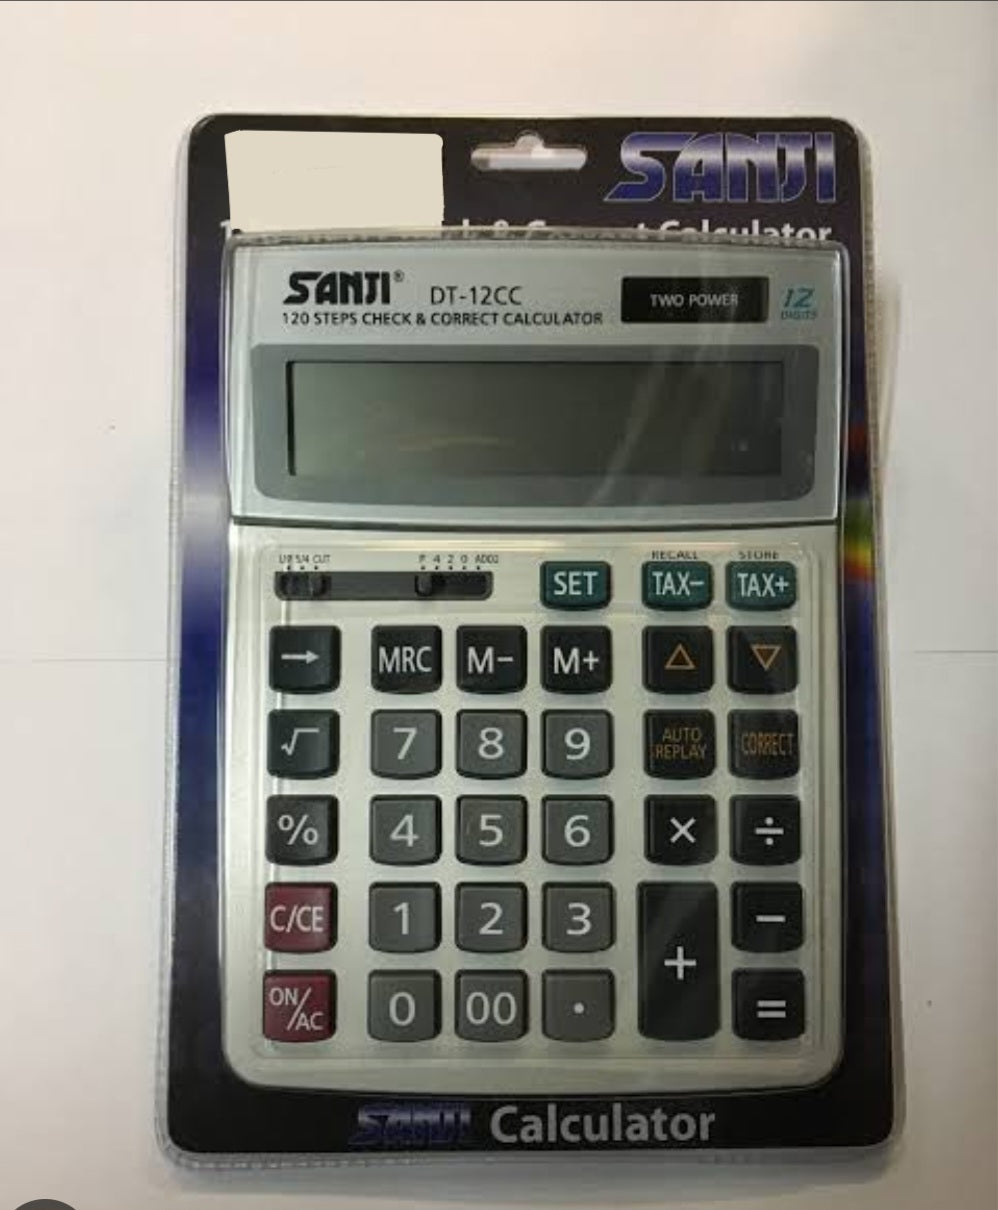 Sanji DT-12cc 12 Digit Calculator